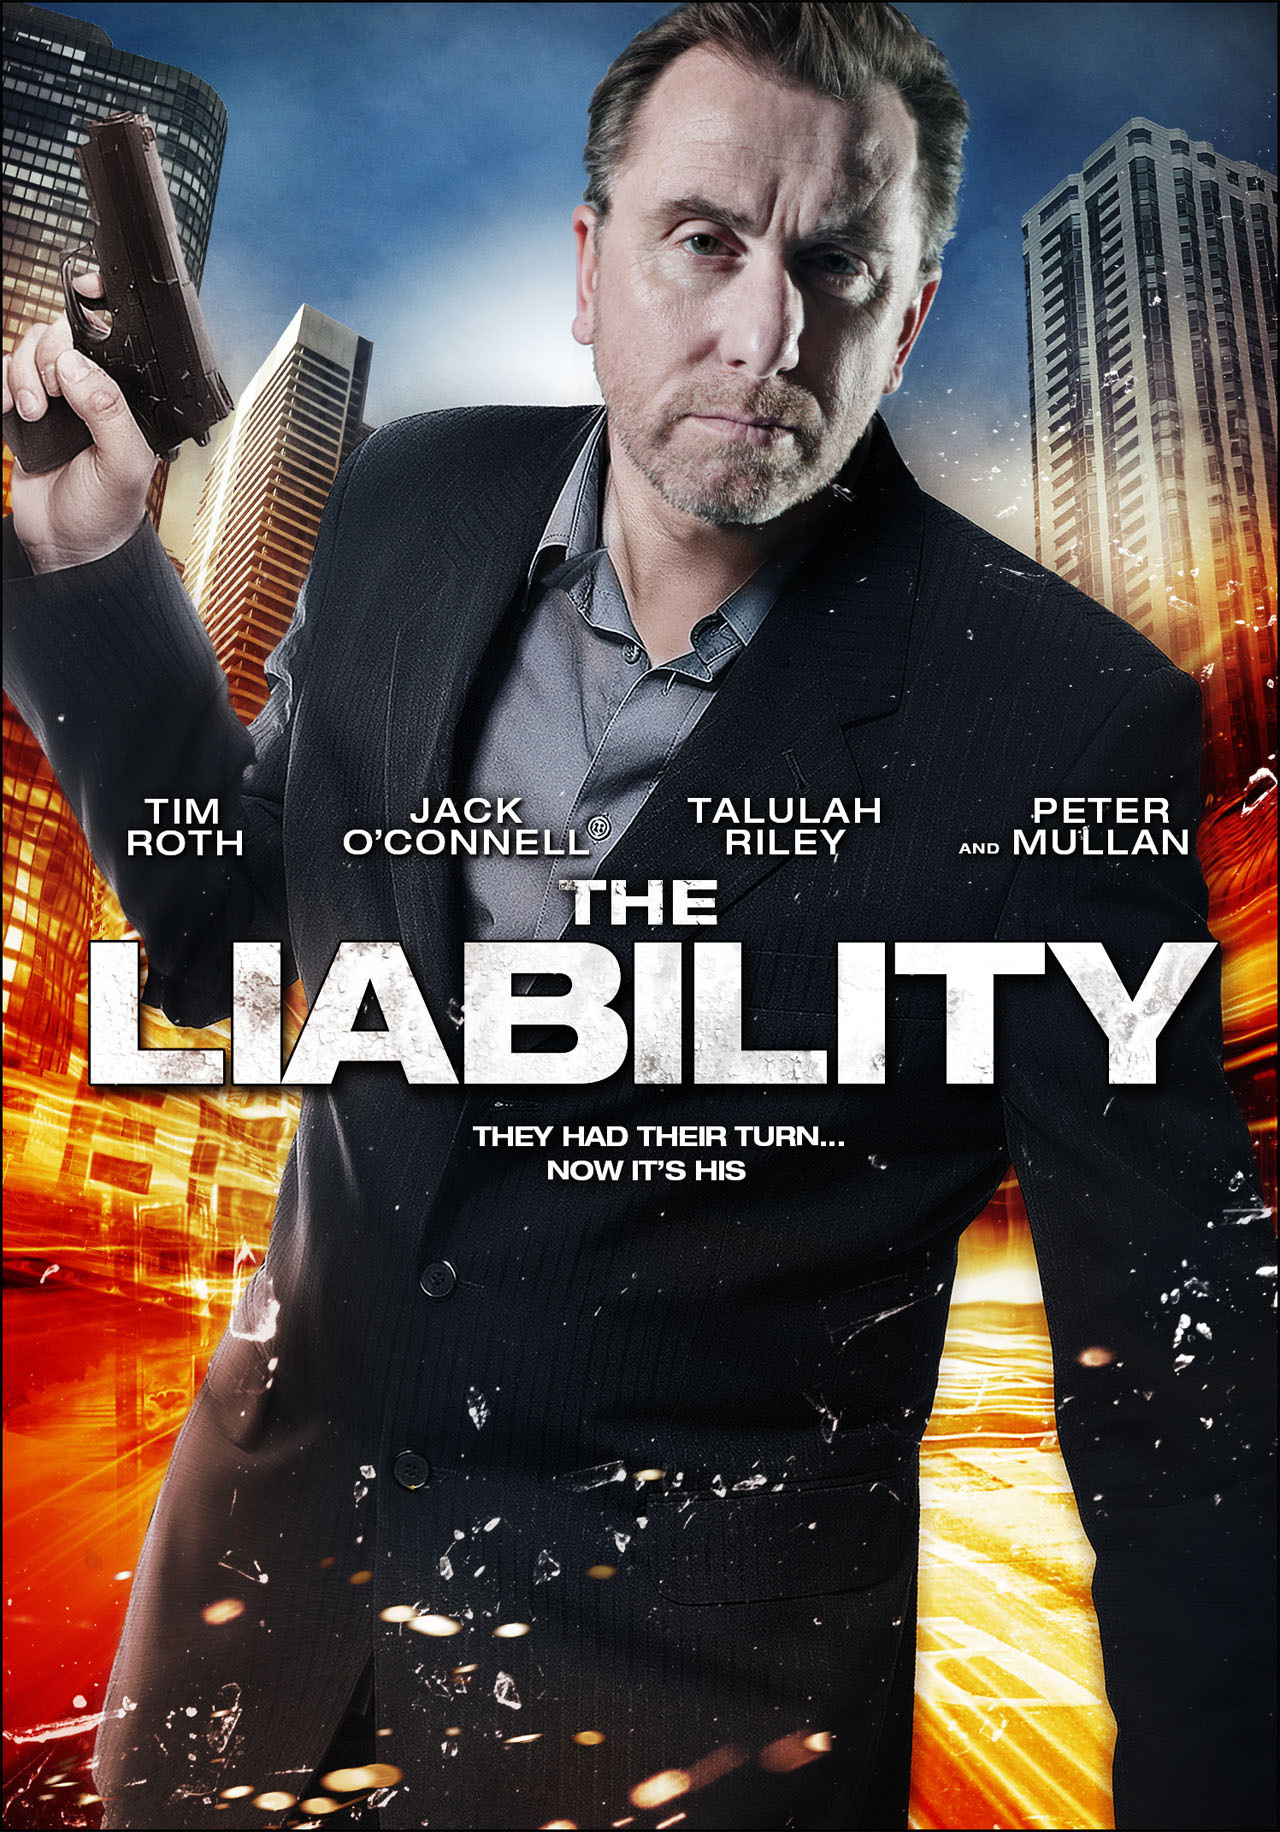 ดูหนังออนไลน์ฟรี The Liability (2012) เกมเดือดเชือดมาเฟีย หนังเต็มเรื่อง หนังมาสเตอร์ ดูหนังHD ดูหนังออนไลน์ ดูหนังใหม่